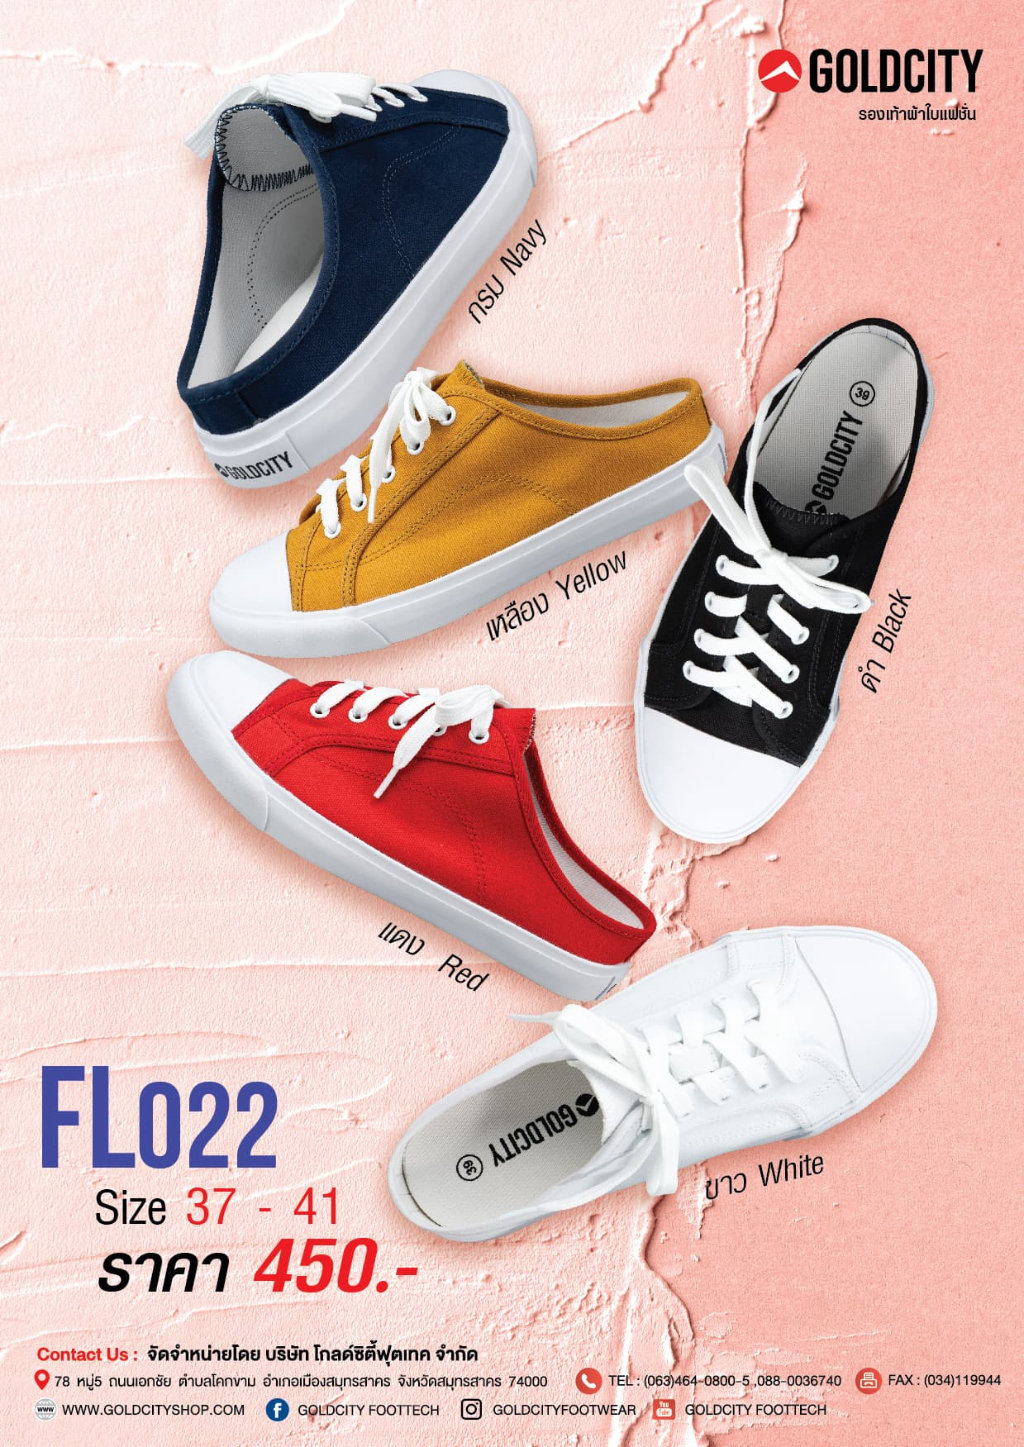 ข้อมูลเพิ่มเติมของ GOLDCITY รุ่น FL022 รองเท้าผ้าใบแฟชั่น รองเท้าผ้าใบ โกลด์ซิตี้